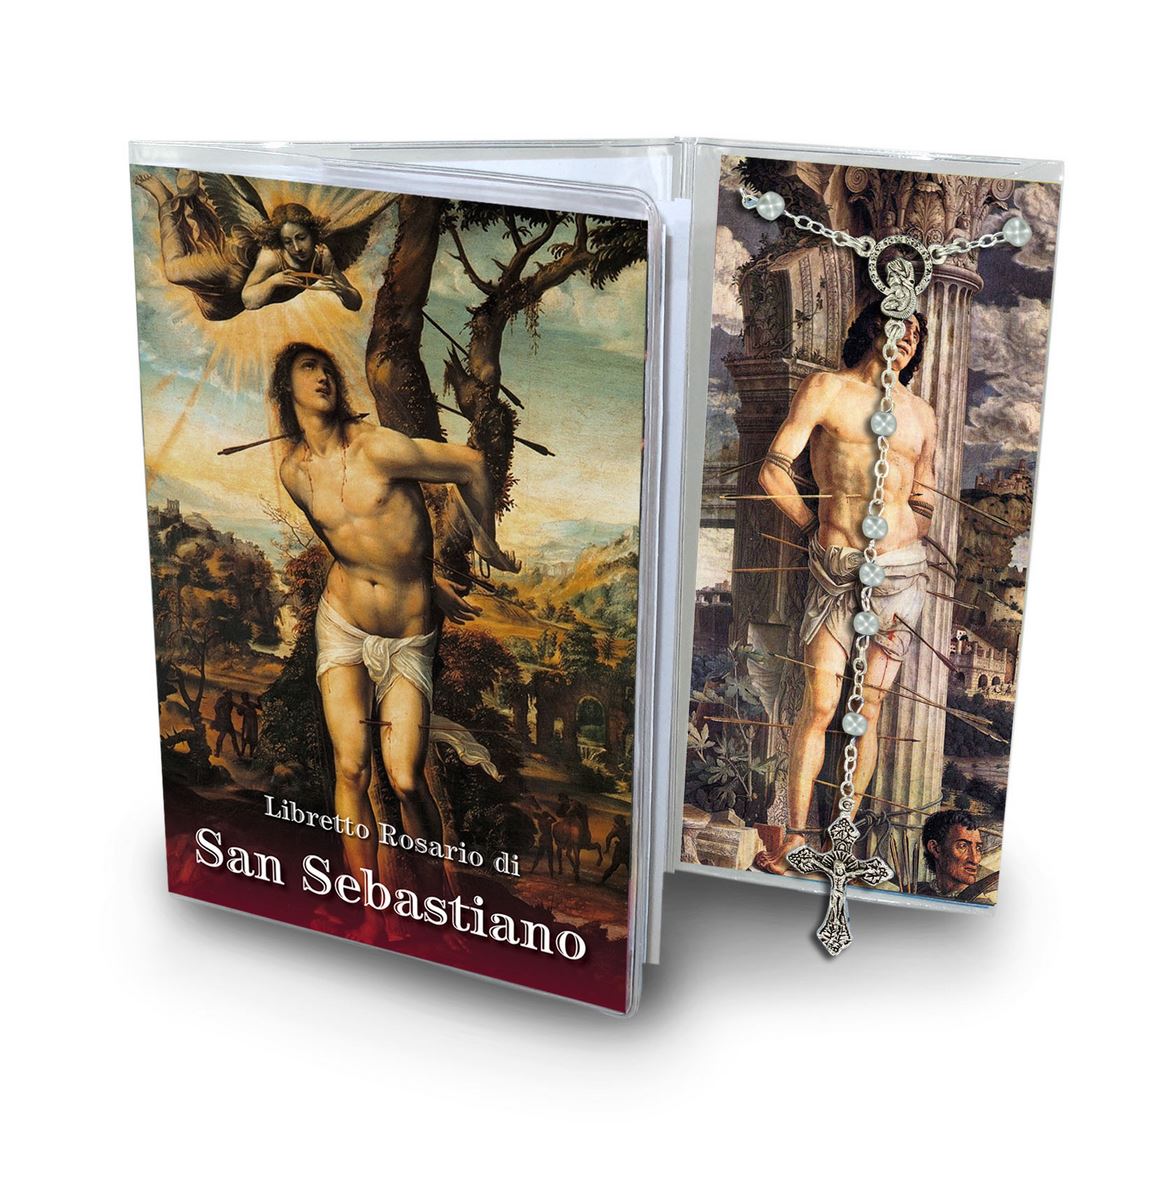 libretto con rosario san sebastiano – italiano